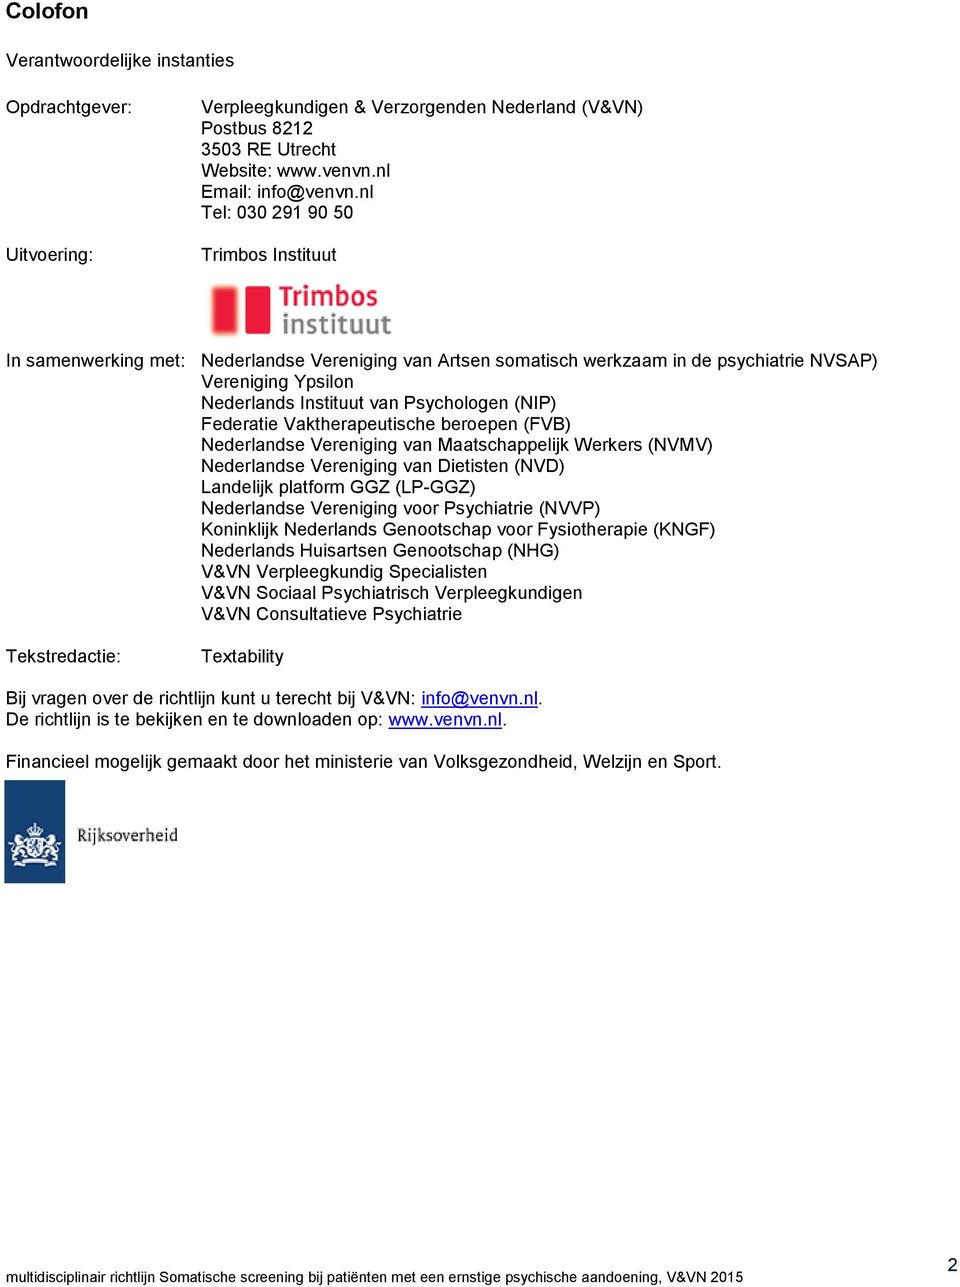 (NIP) Federatie Vaktherapeutische beroepen (FVB) Nederlandse Vereniging van Maatschappelijk Werkers (NVMV) Nederlandse Vereniging van Dietisten (NVD) Landelijk platform GGZ (LP-GGZ) Nederlandse